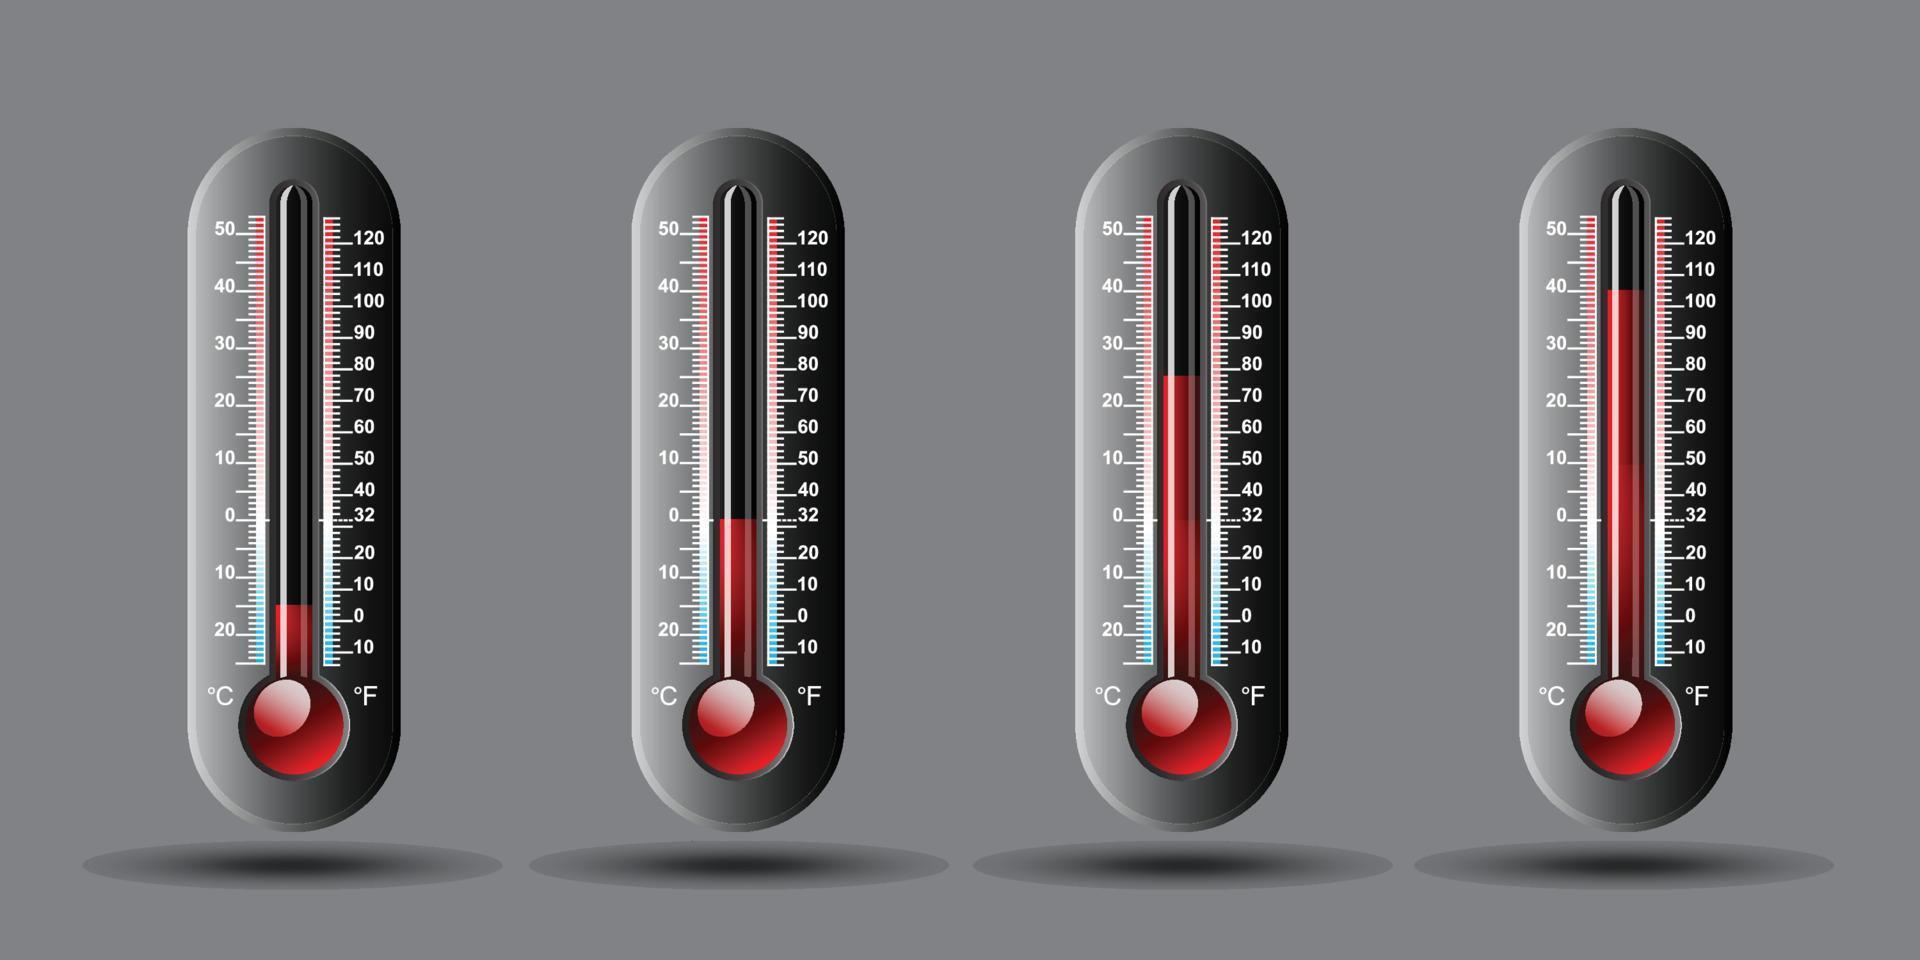 Termómetro meteorológico de temperatura con escala celsius y fahrenheit. ilustración vectorial vector